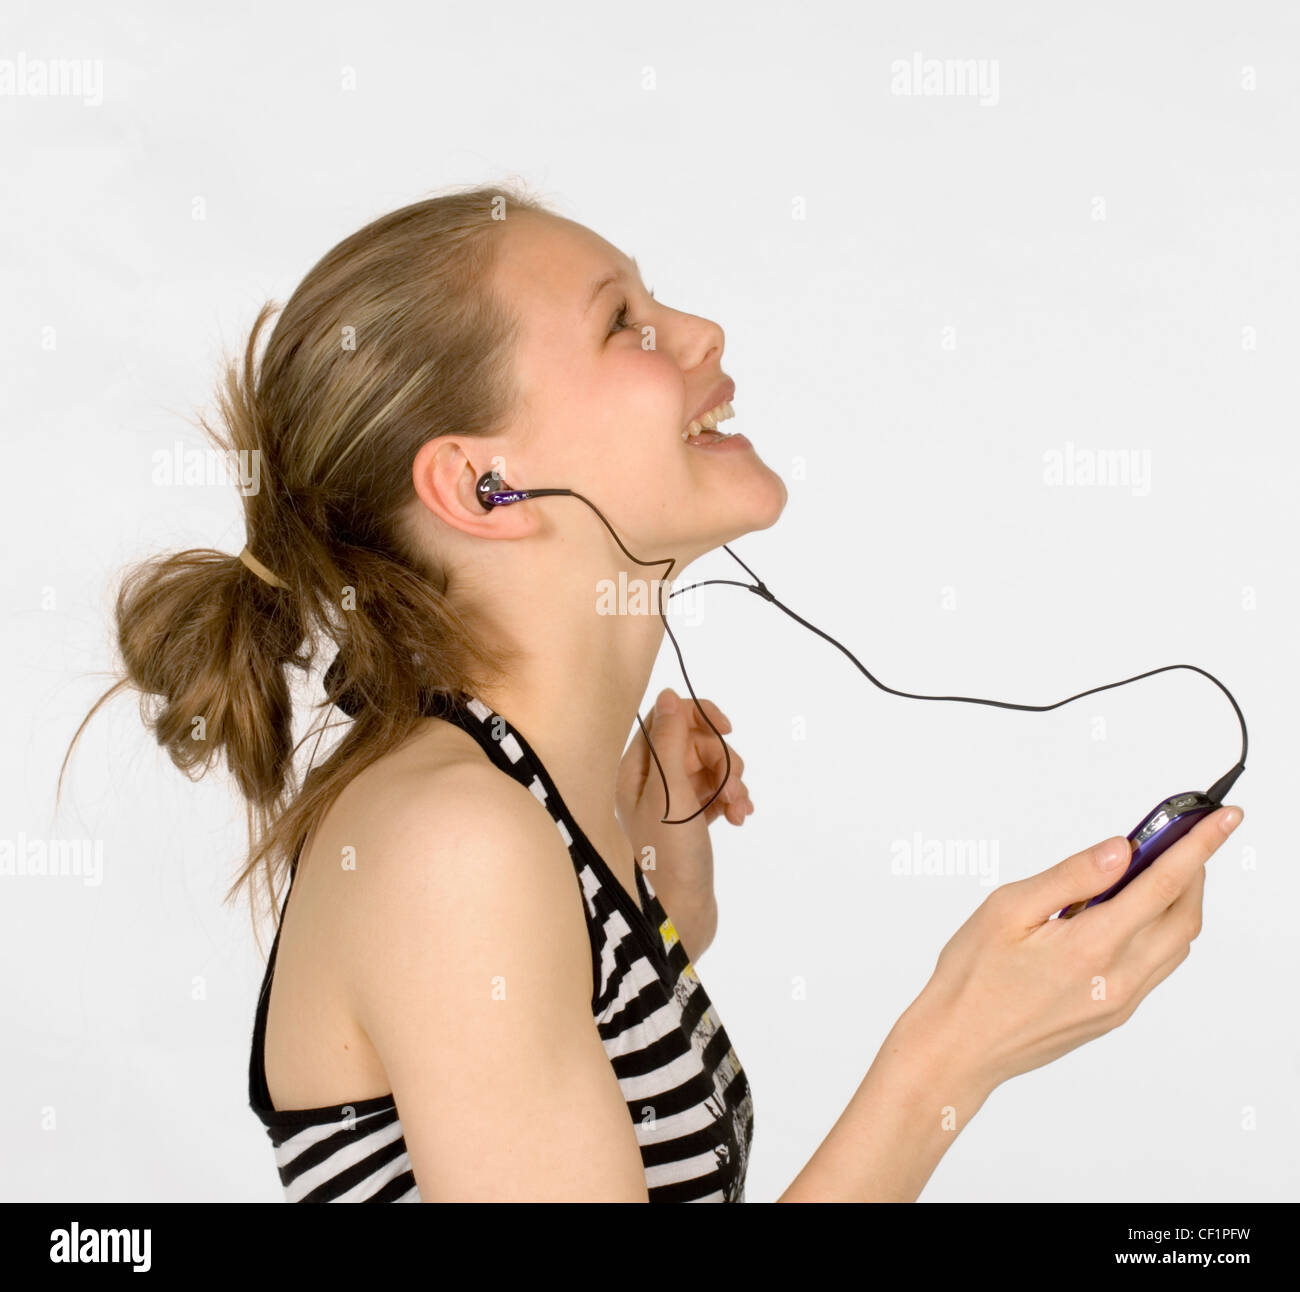 Teenager Musik hören. Portable audio-Geräte haben die Art und Weise revolutioniert, Menschen kaufen und hören Musik. Stockfoto